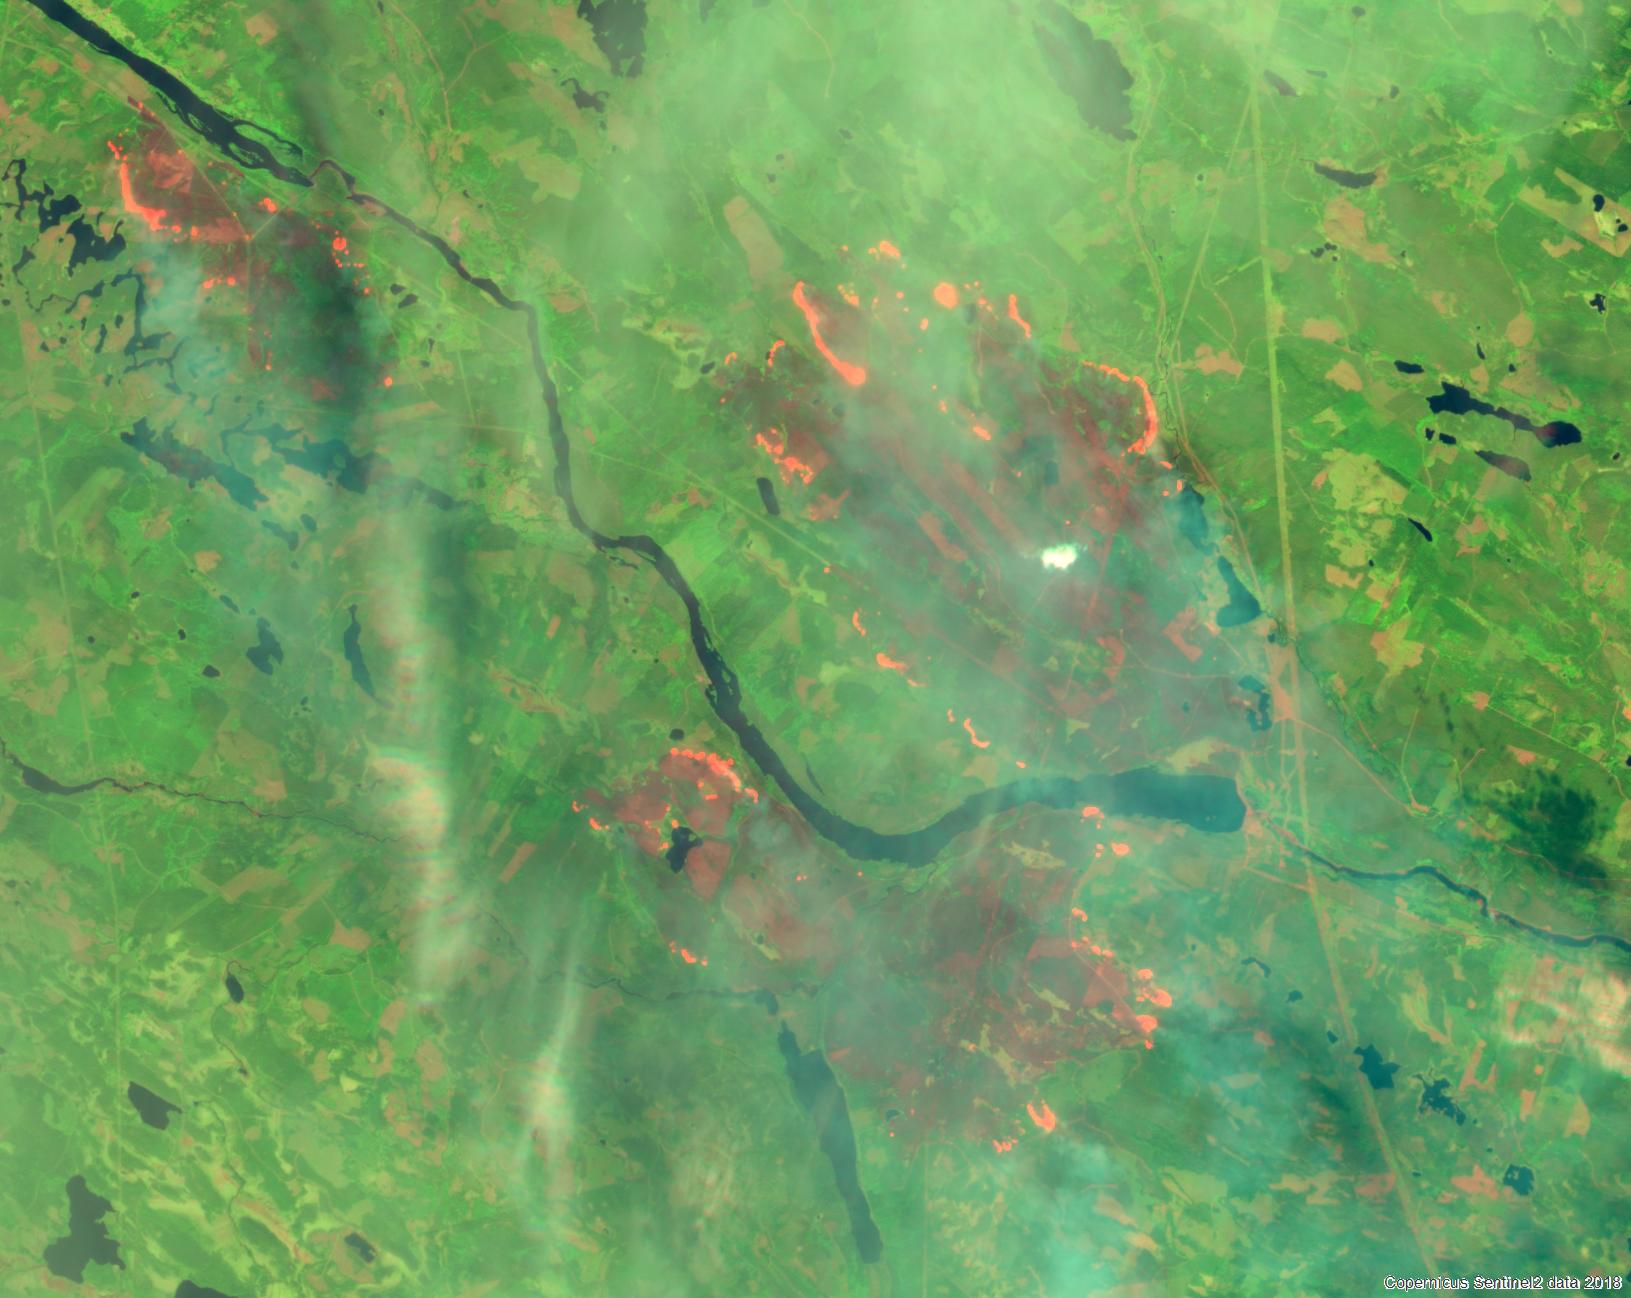 Bild av skogsbranden i trakten av Kårböle. Bilden, som är baserad på Sentinel 2-data från 19 juli 2018, är framtagen av Skogsstyrelsen.